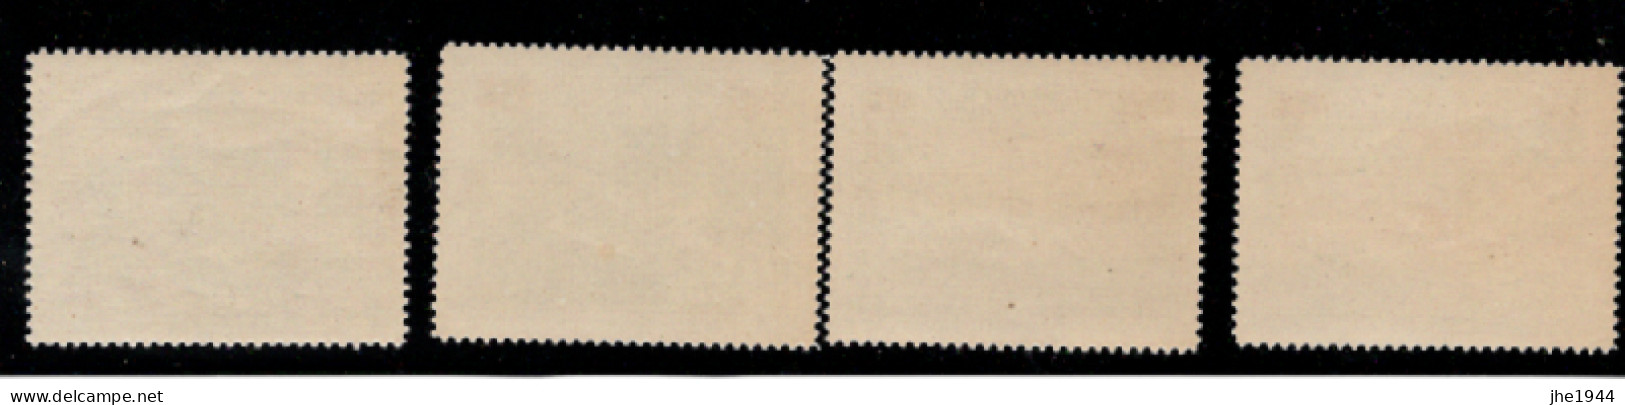 Grece Poste Aérienne N° 1 à 4 ** Neufs Série Hydravions - Unused Stamps